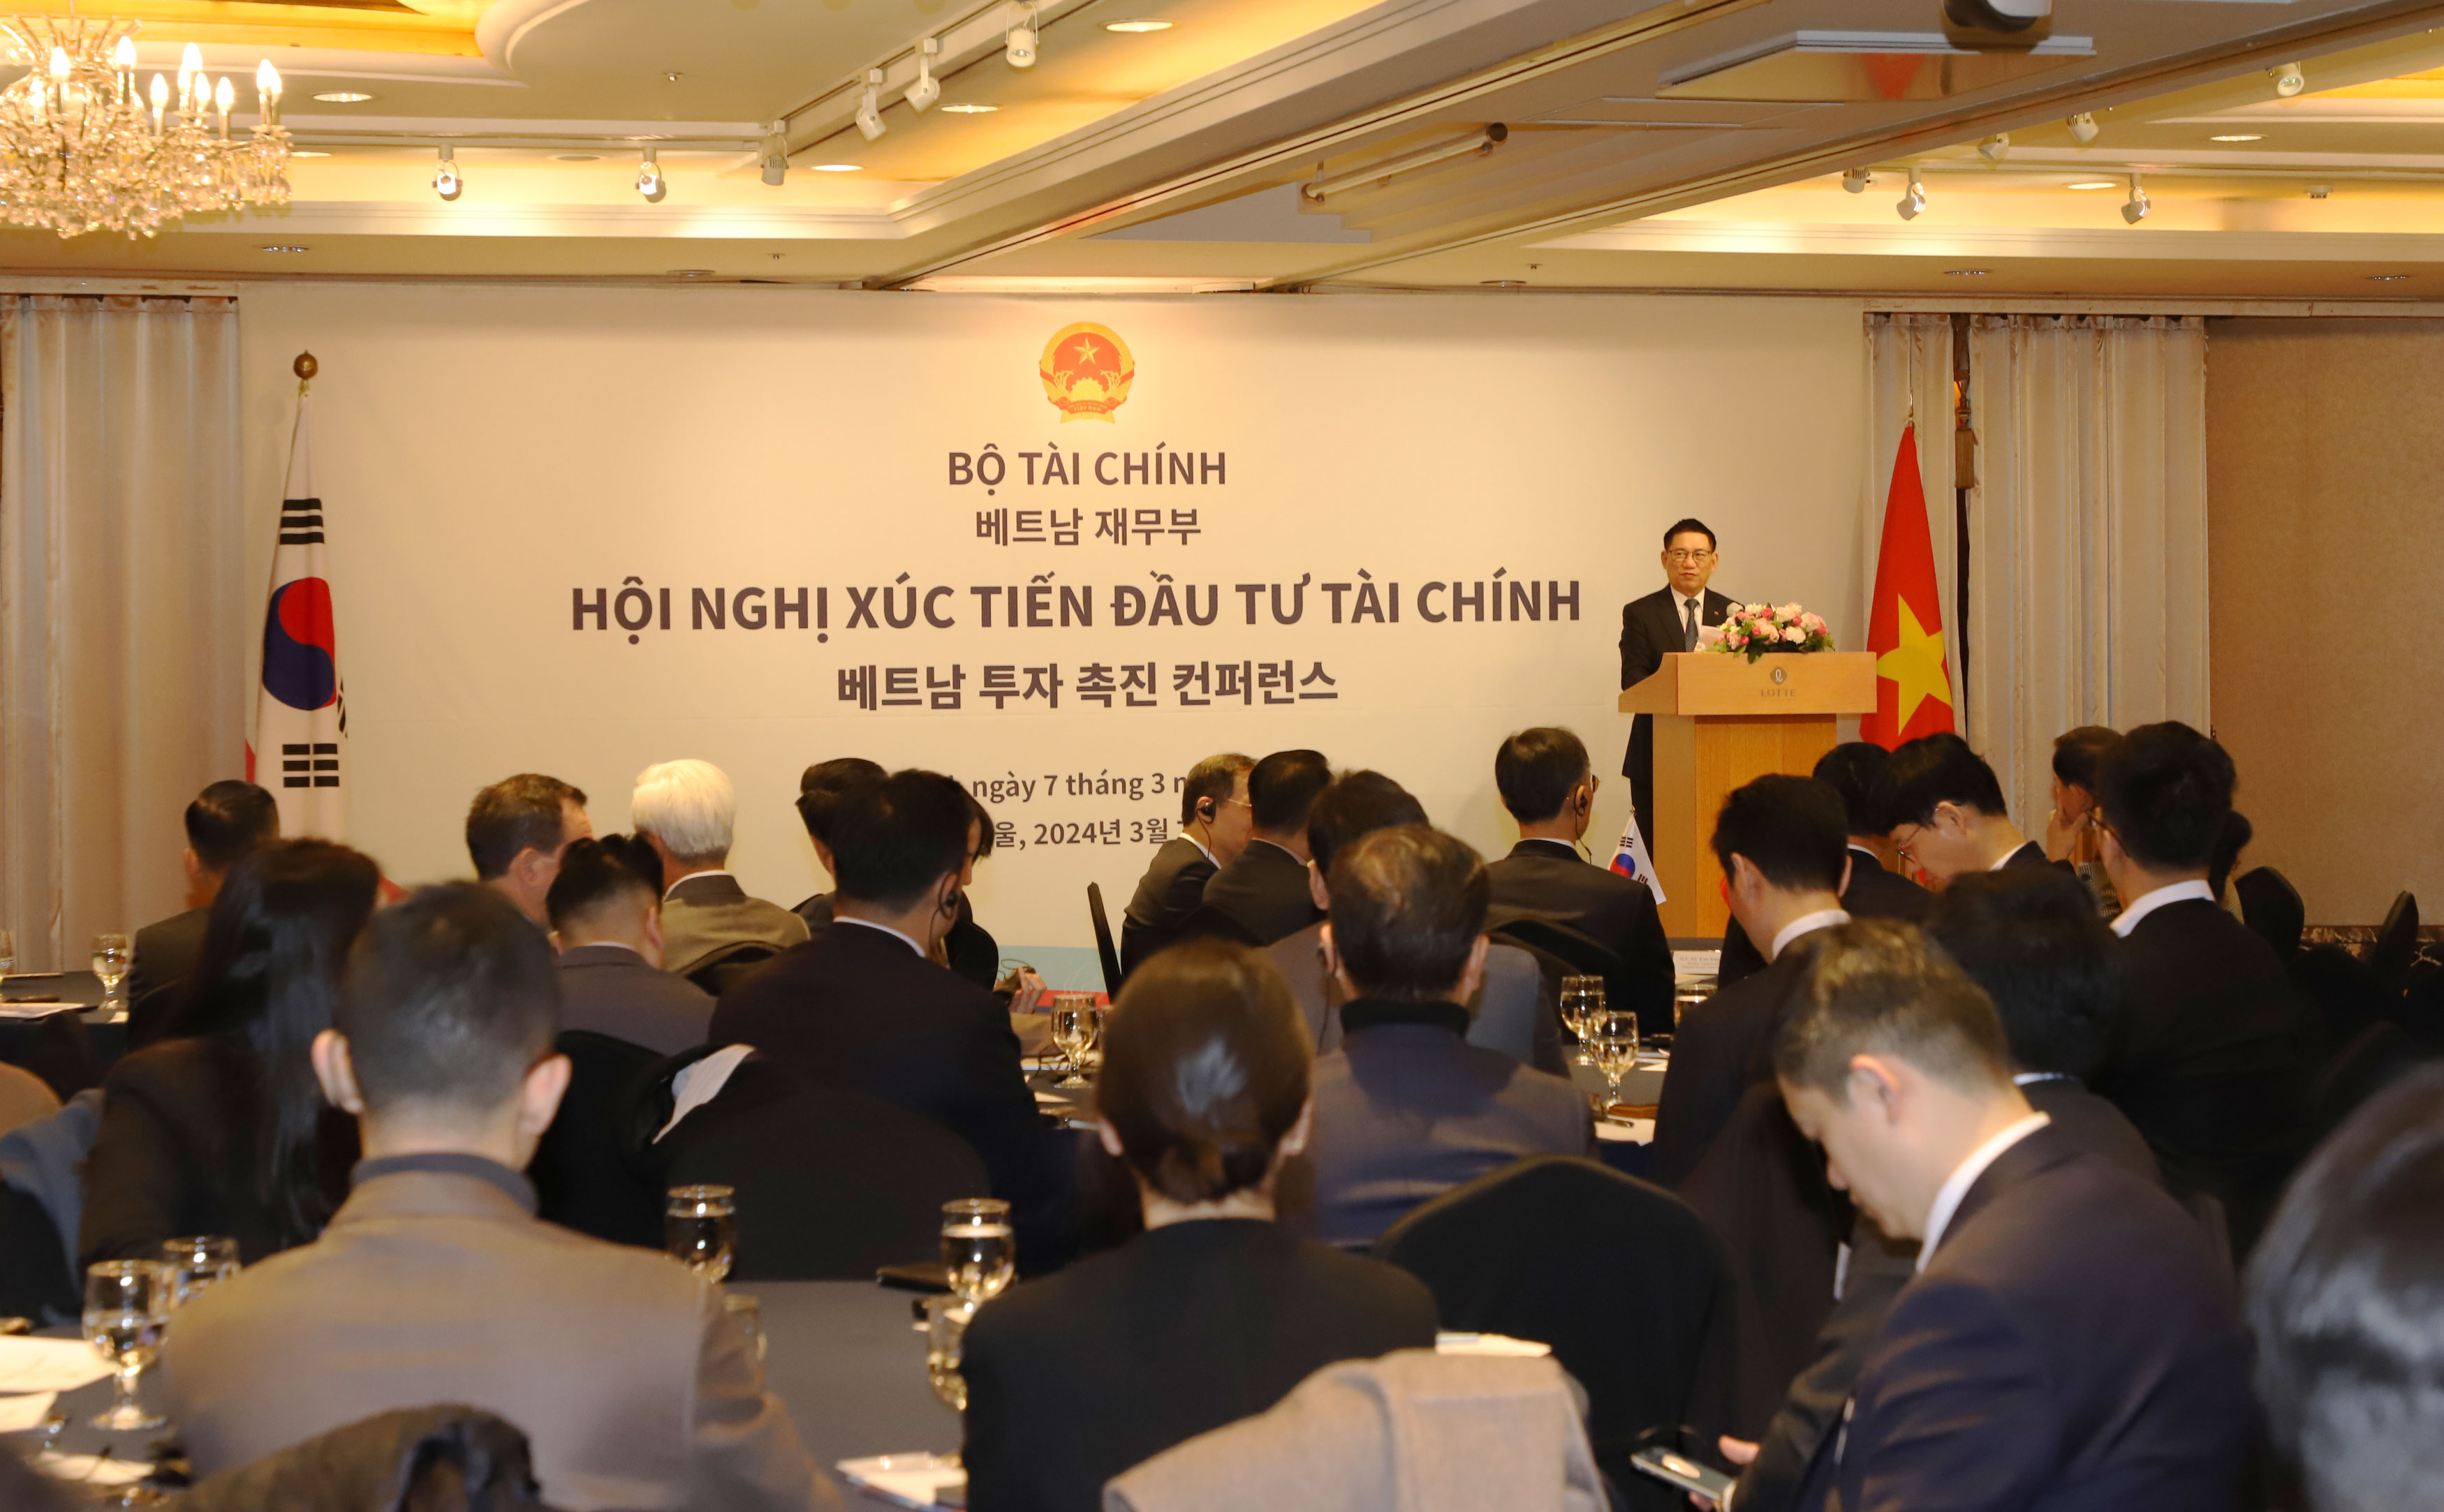 Bộ trưởng khẳng định Hội nghị xúc tiến đầu tư góp phần củng cố lòng tin của nhà đầu tư Hàn Quốc đối với tiềm năng phát triển của thị trường Việt Nam. Ảnh: SSC 